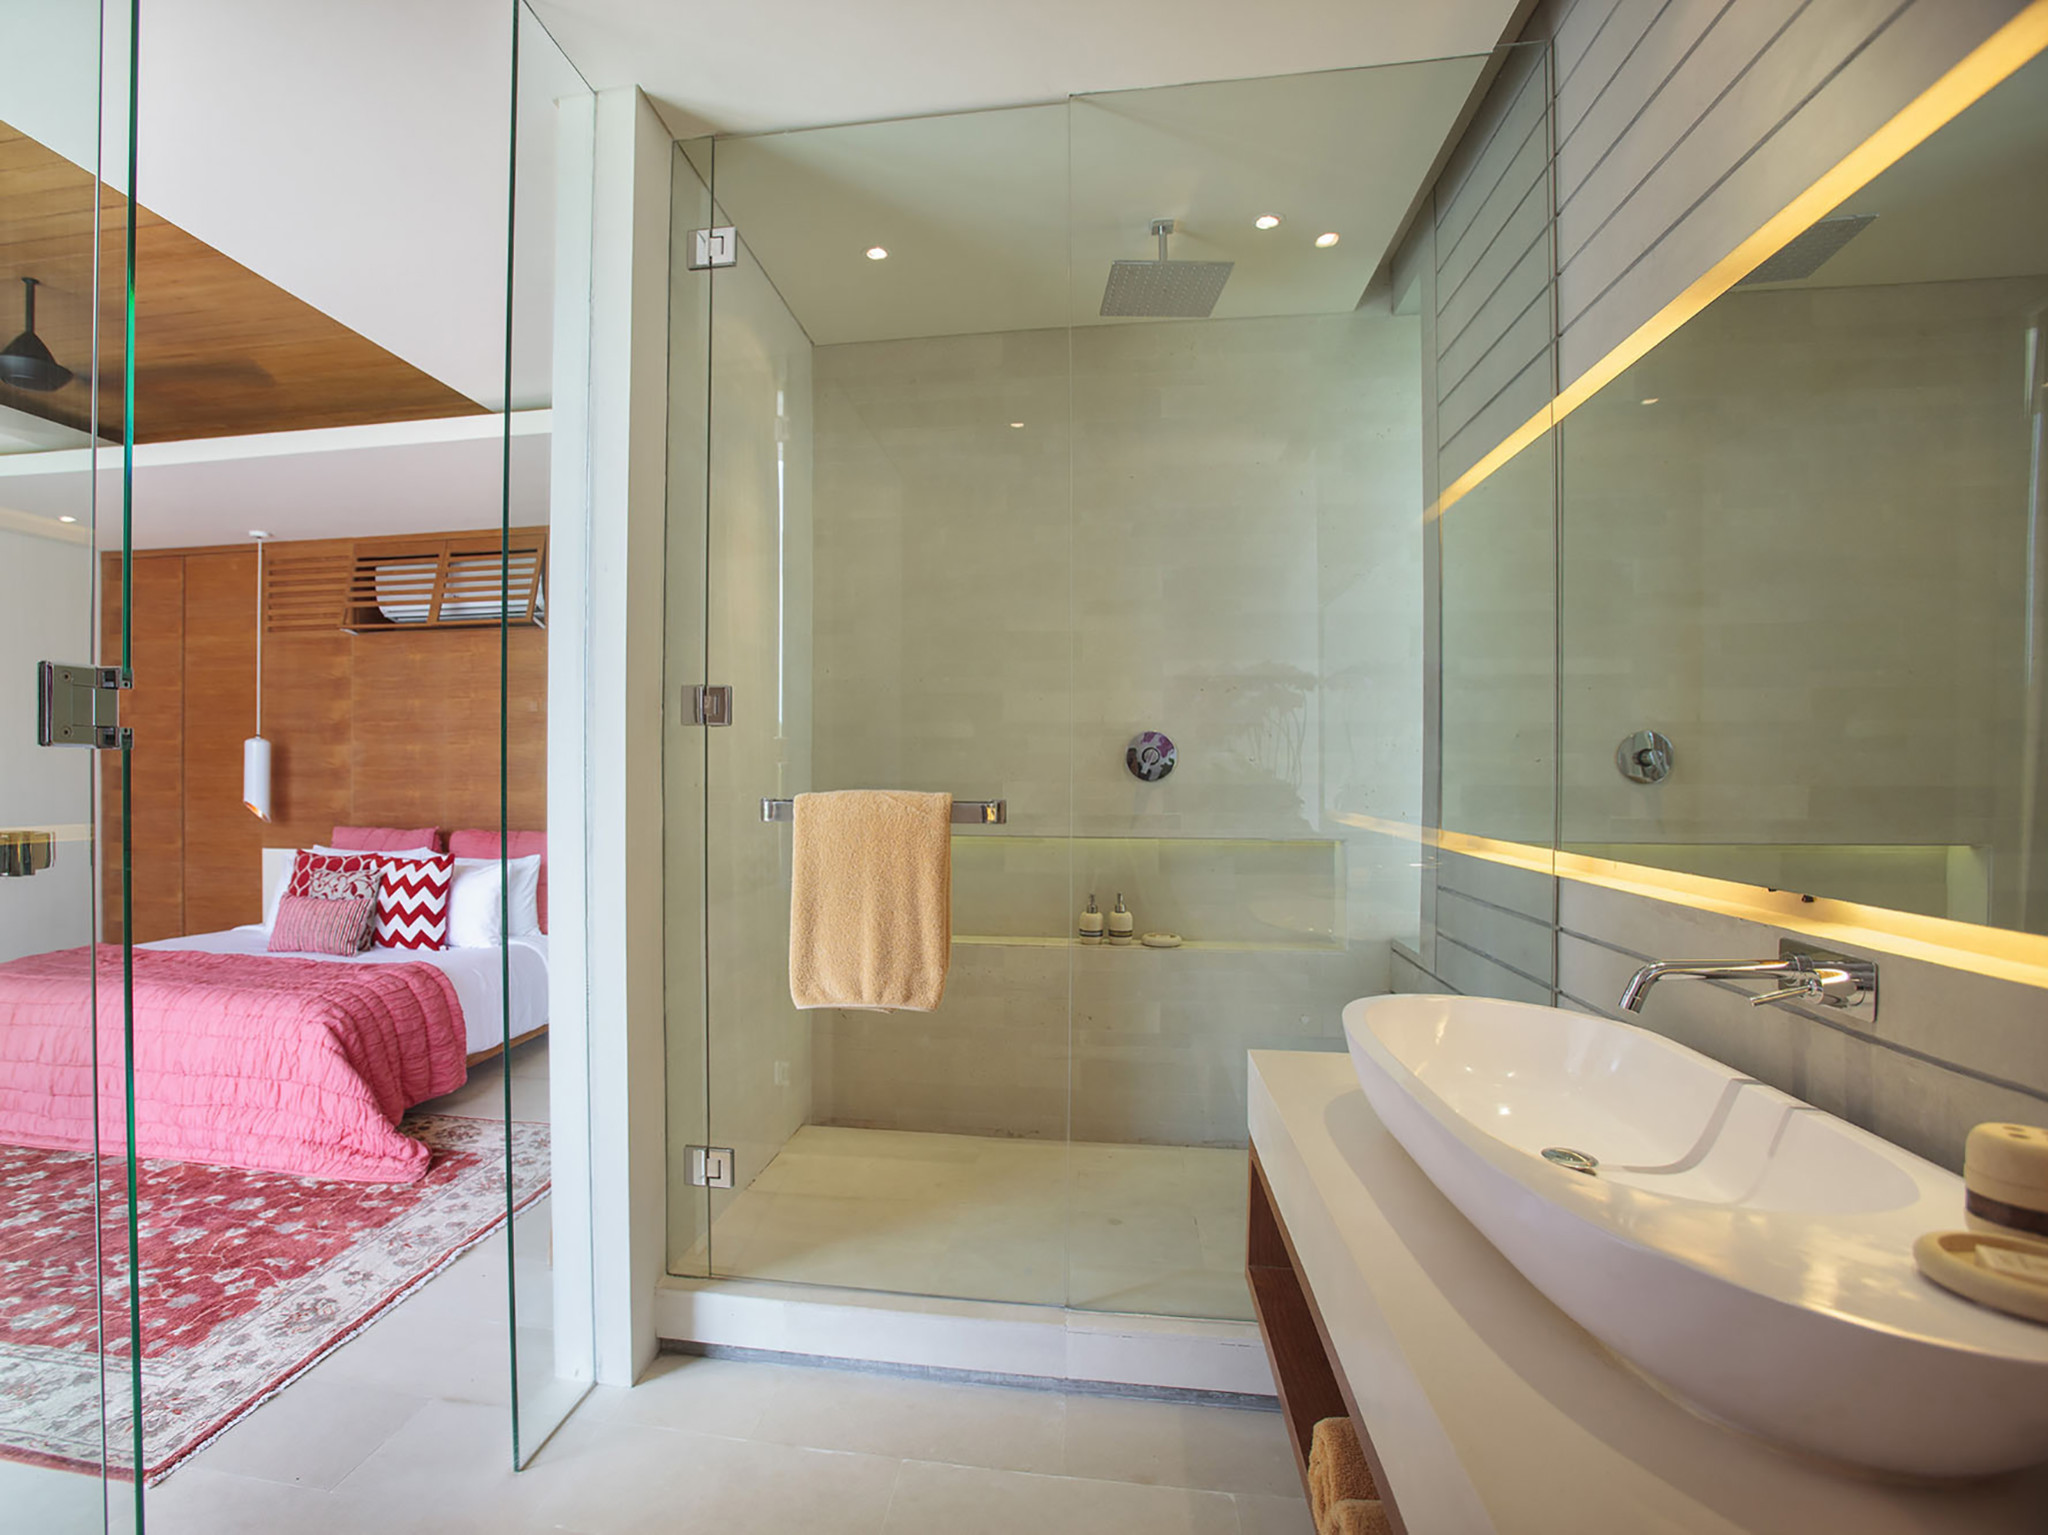 The Iman Villa - Canggu Bali - Guest bedroom and ensuite bathroom